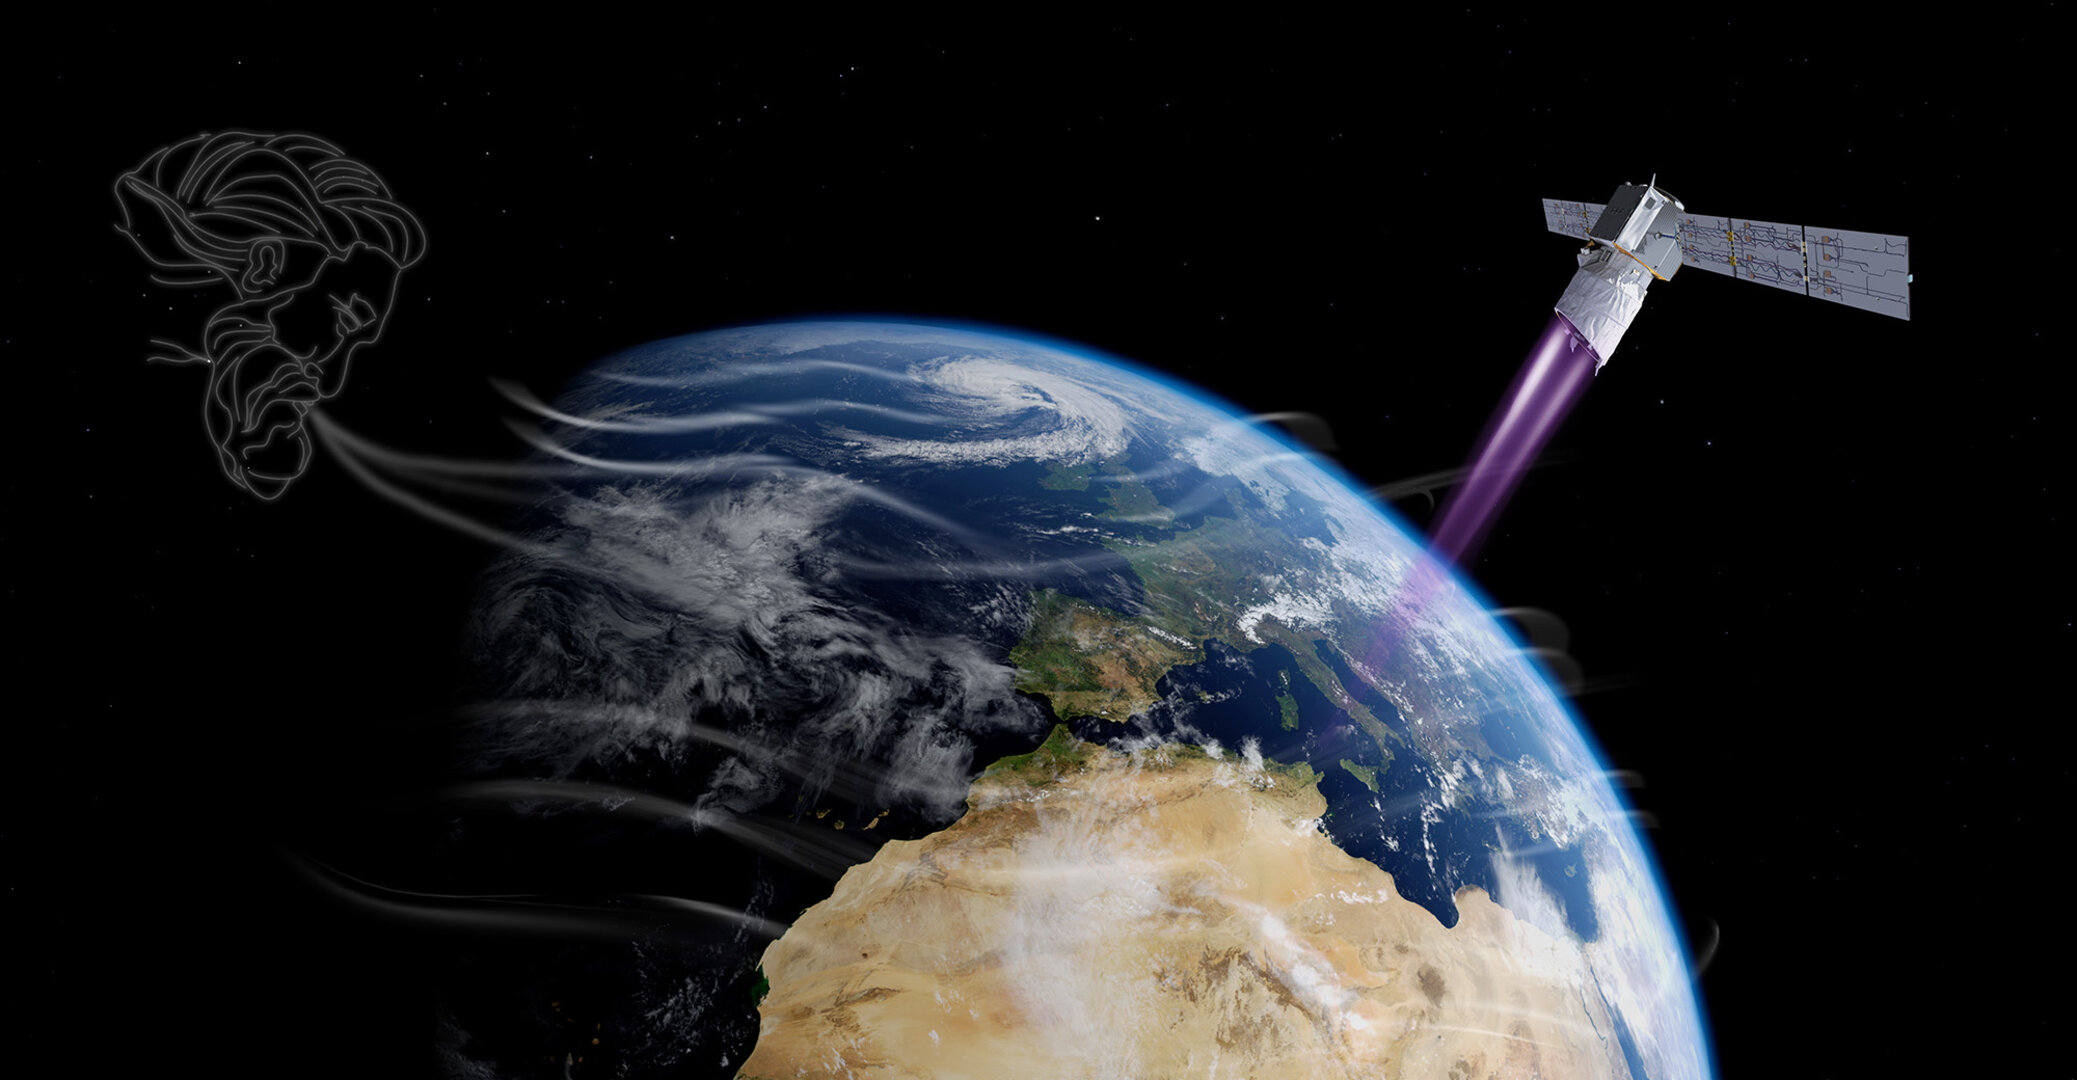 Benannt ist die neue ESA-Mission nach dem griechischen Gott "Aeolus" - dem König der Winde. 